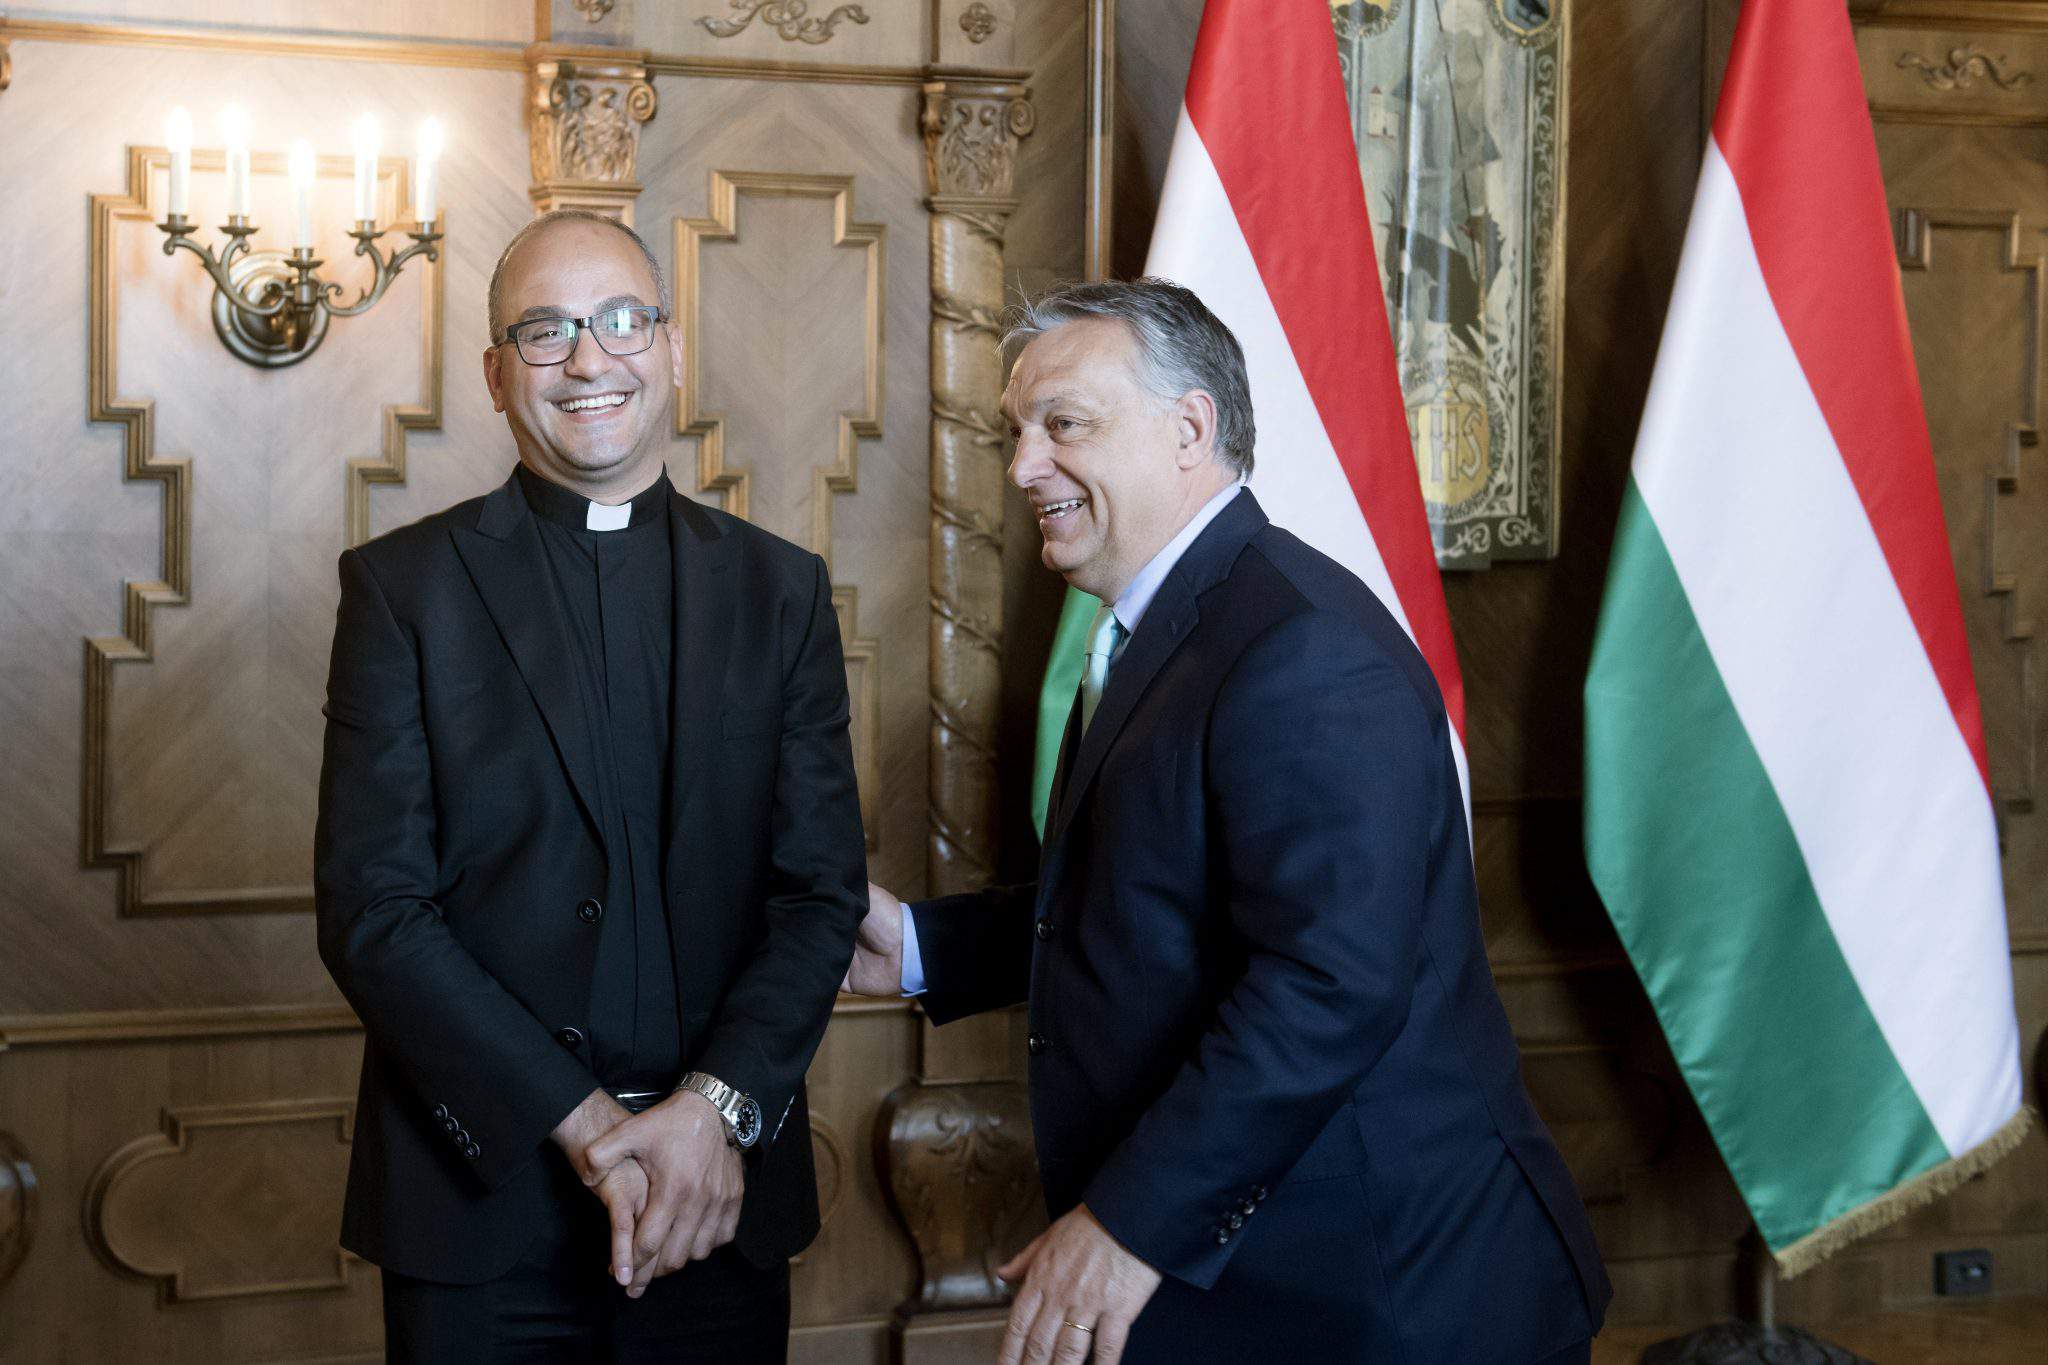 Tesqopa Iraq Orbán